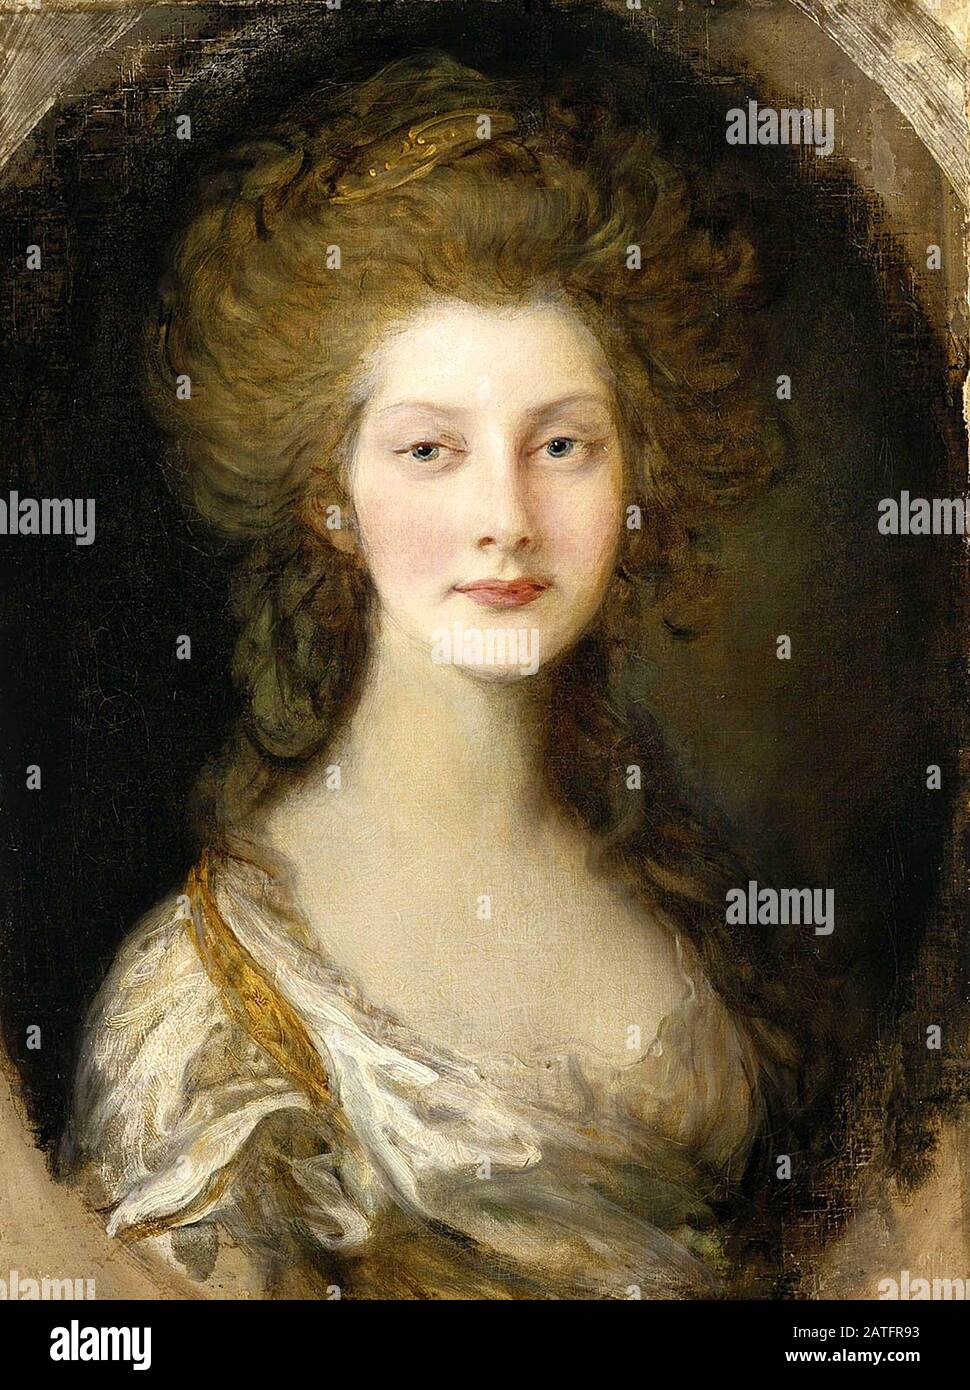 Princesa Augusta, de trece años de edad por Thomas Gainsborough. La Princesa Augusta Sophia del Reino Unido (1768 – 1840) sexto hijo y segunda hija del Rey George III y la Reina Charlotte. Foto de stock